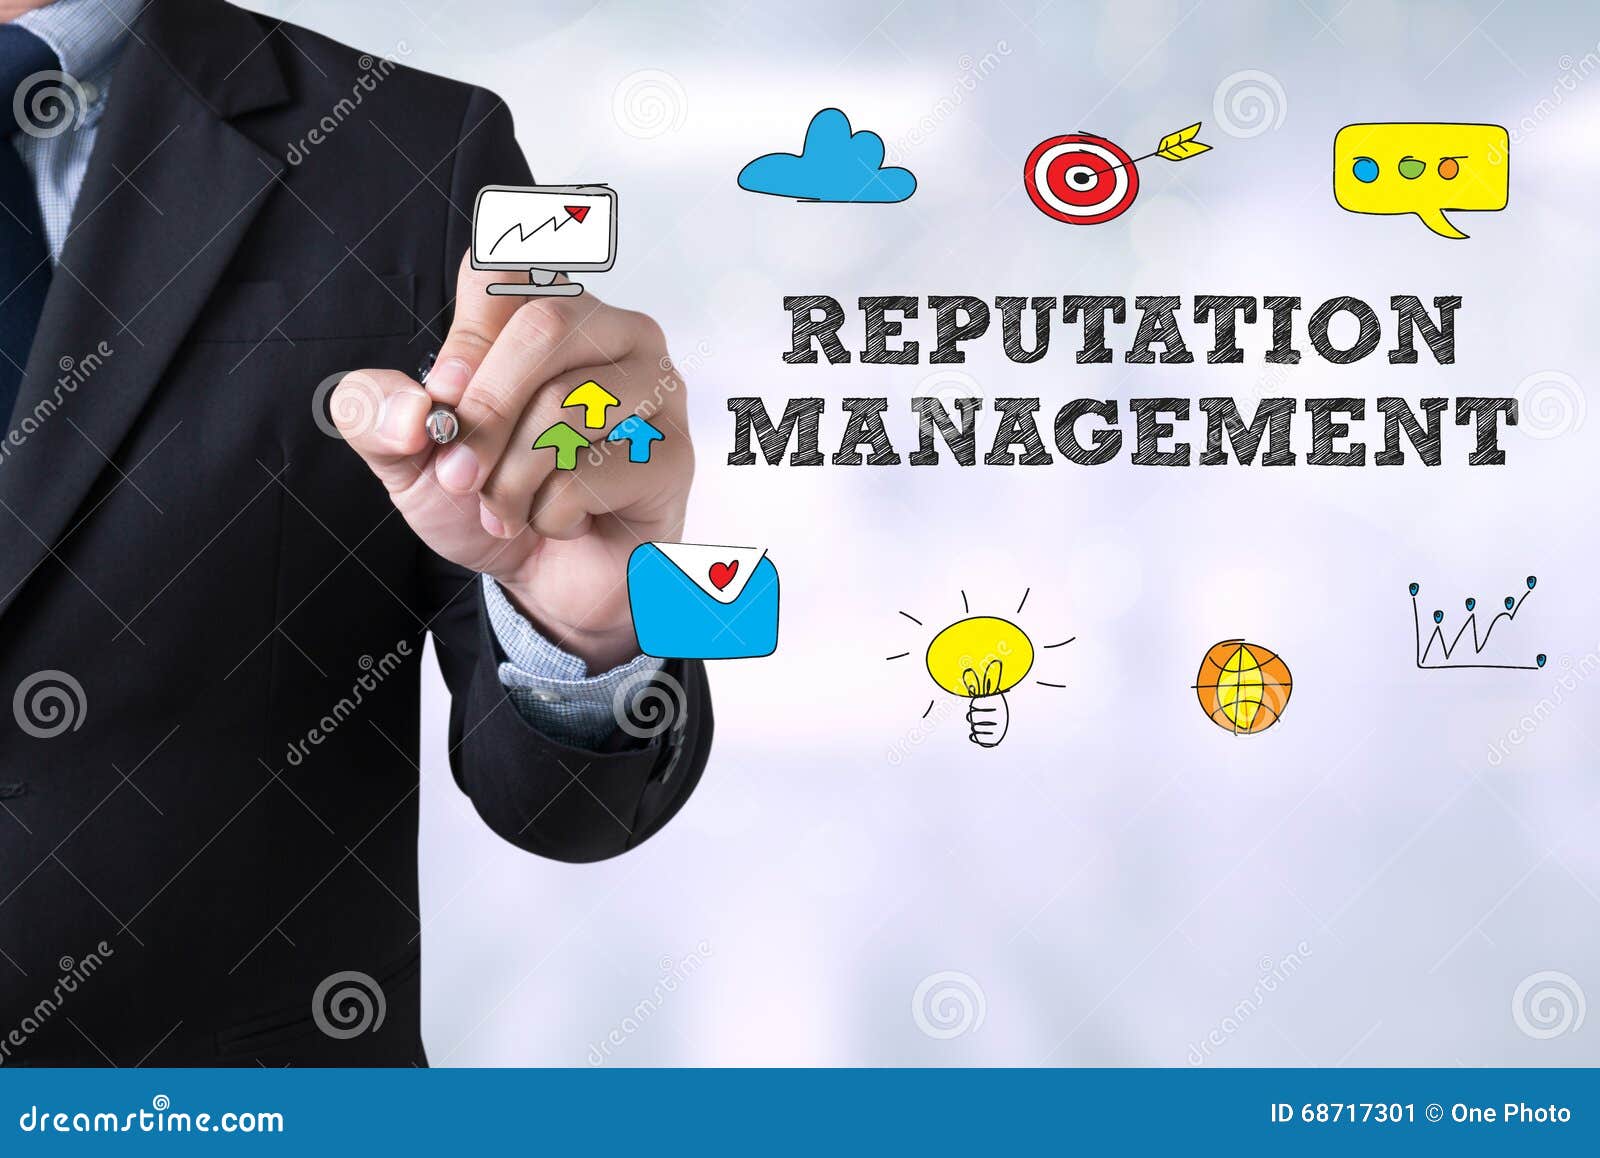 reputation management concept